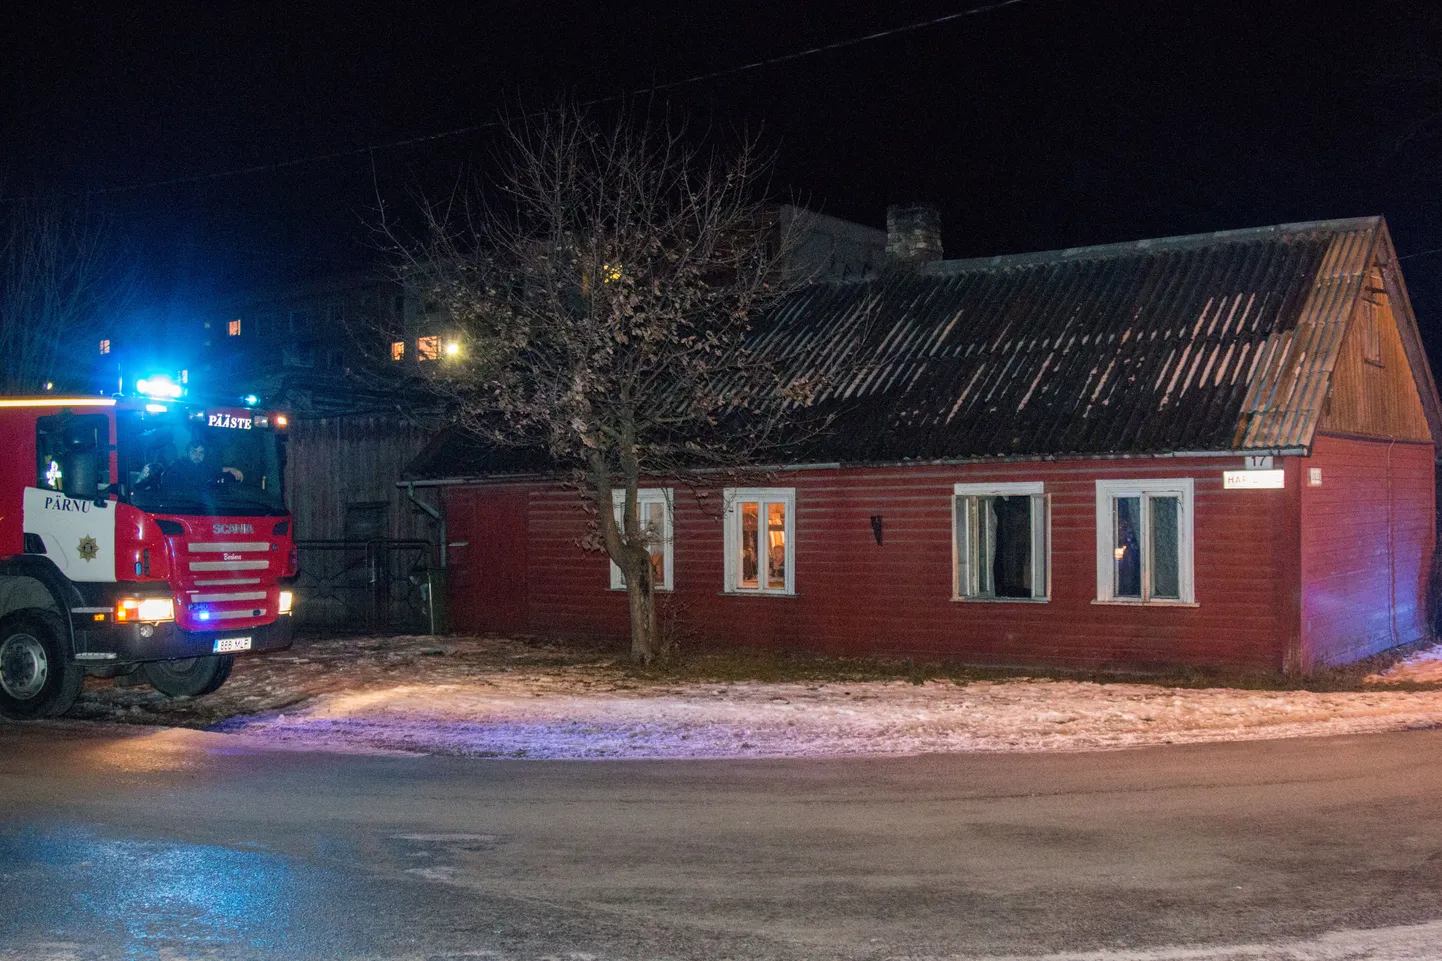 Pärnus Hairiduse tänaval asuvas majas ajas pliit suitsu sisse ja päästjad keelasid korstnapühkija tulekuni küttekoldes tule tegemise.